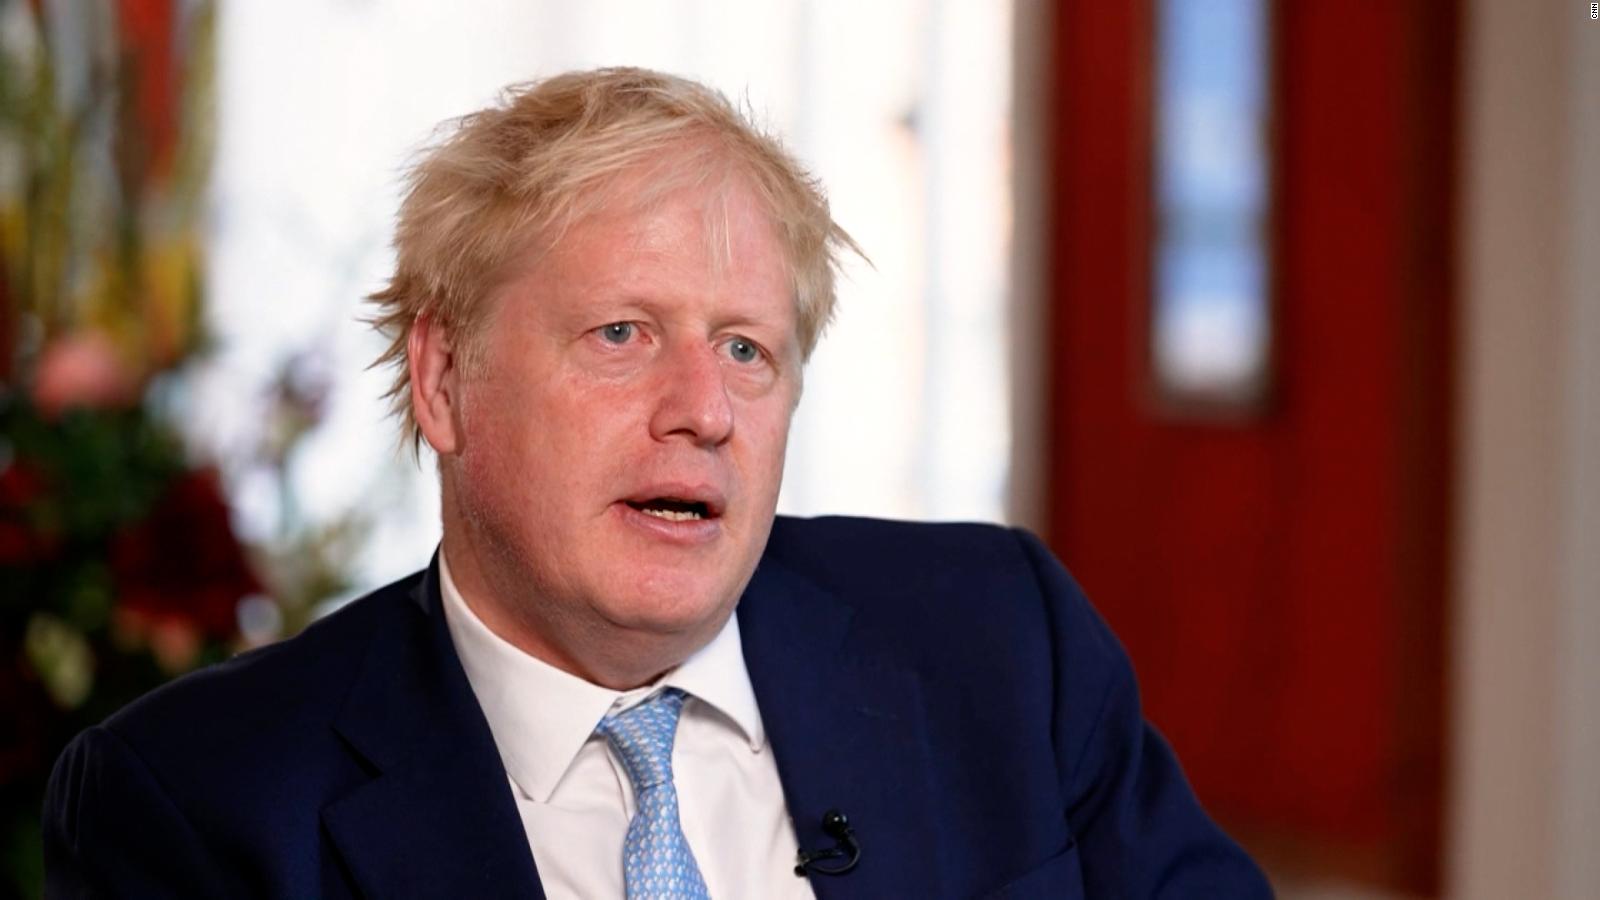 Boris Johnson vows to 'keep going' despite calls to quit